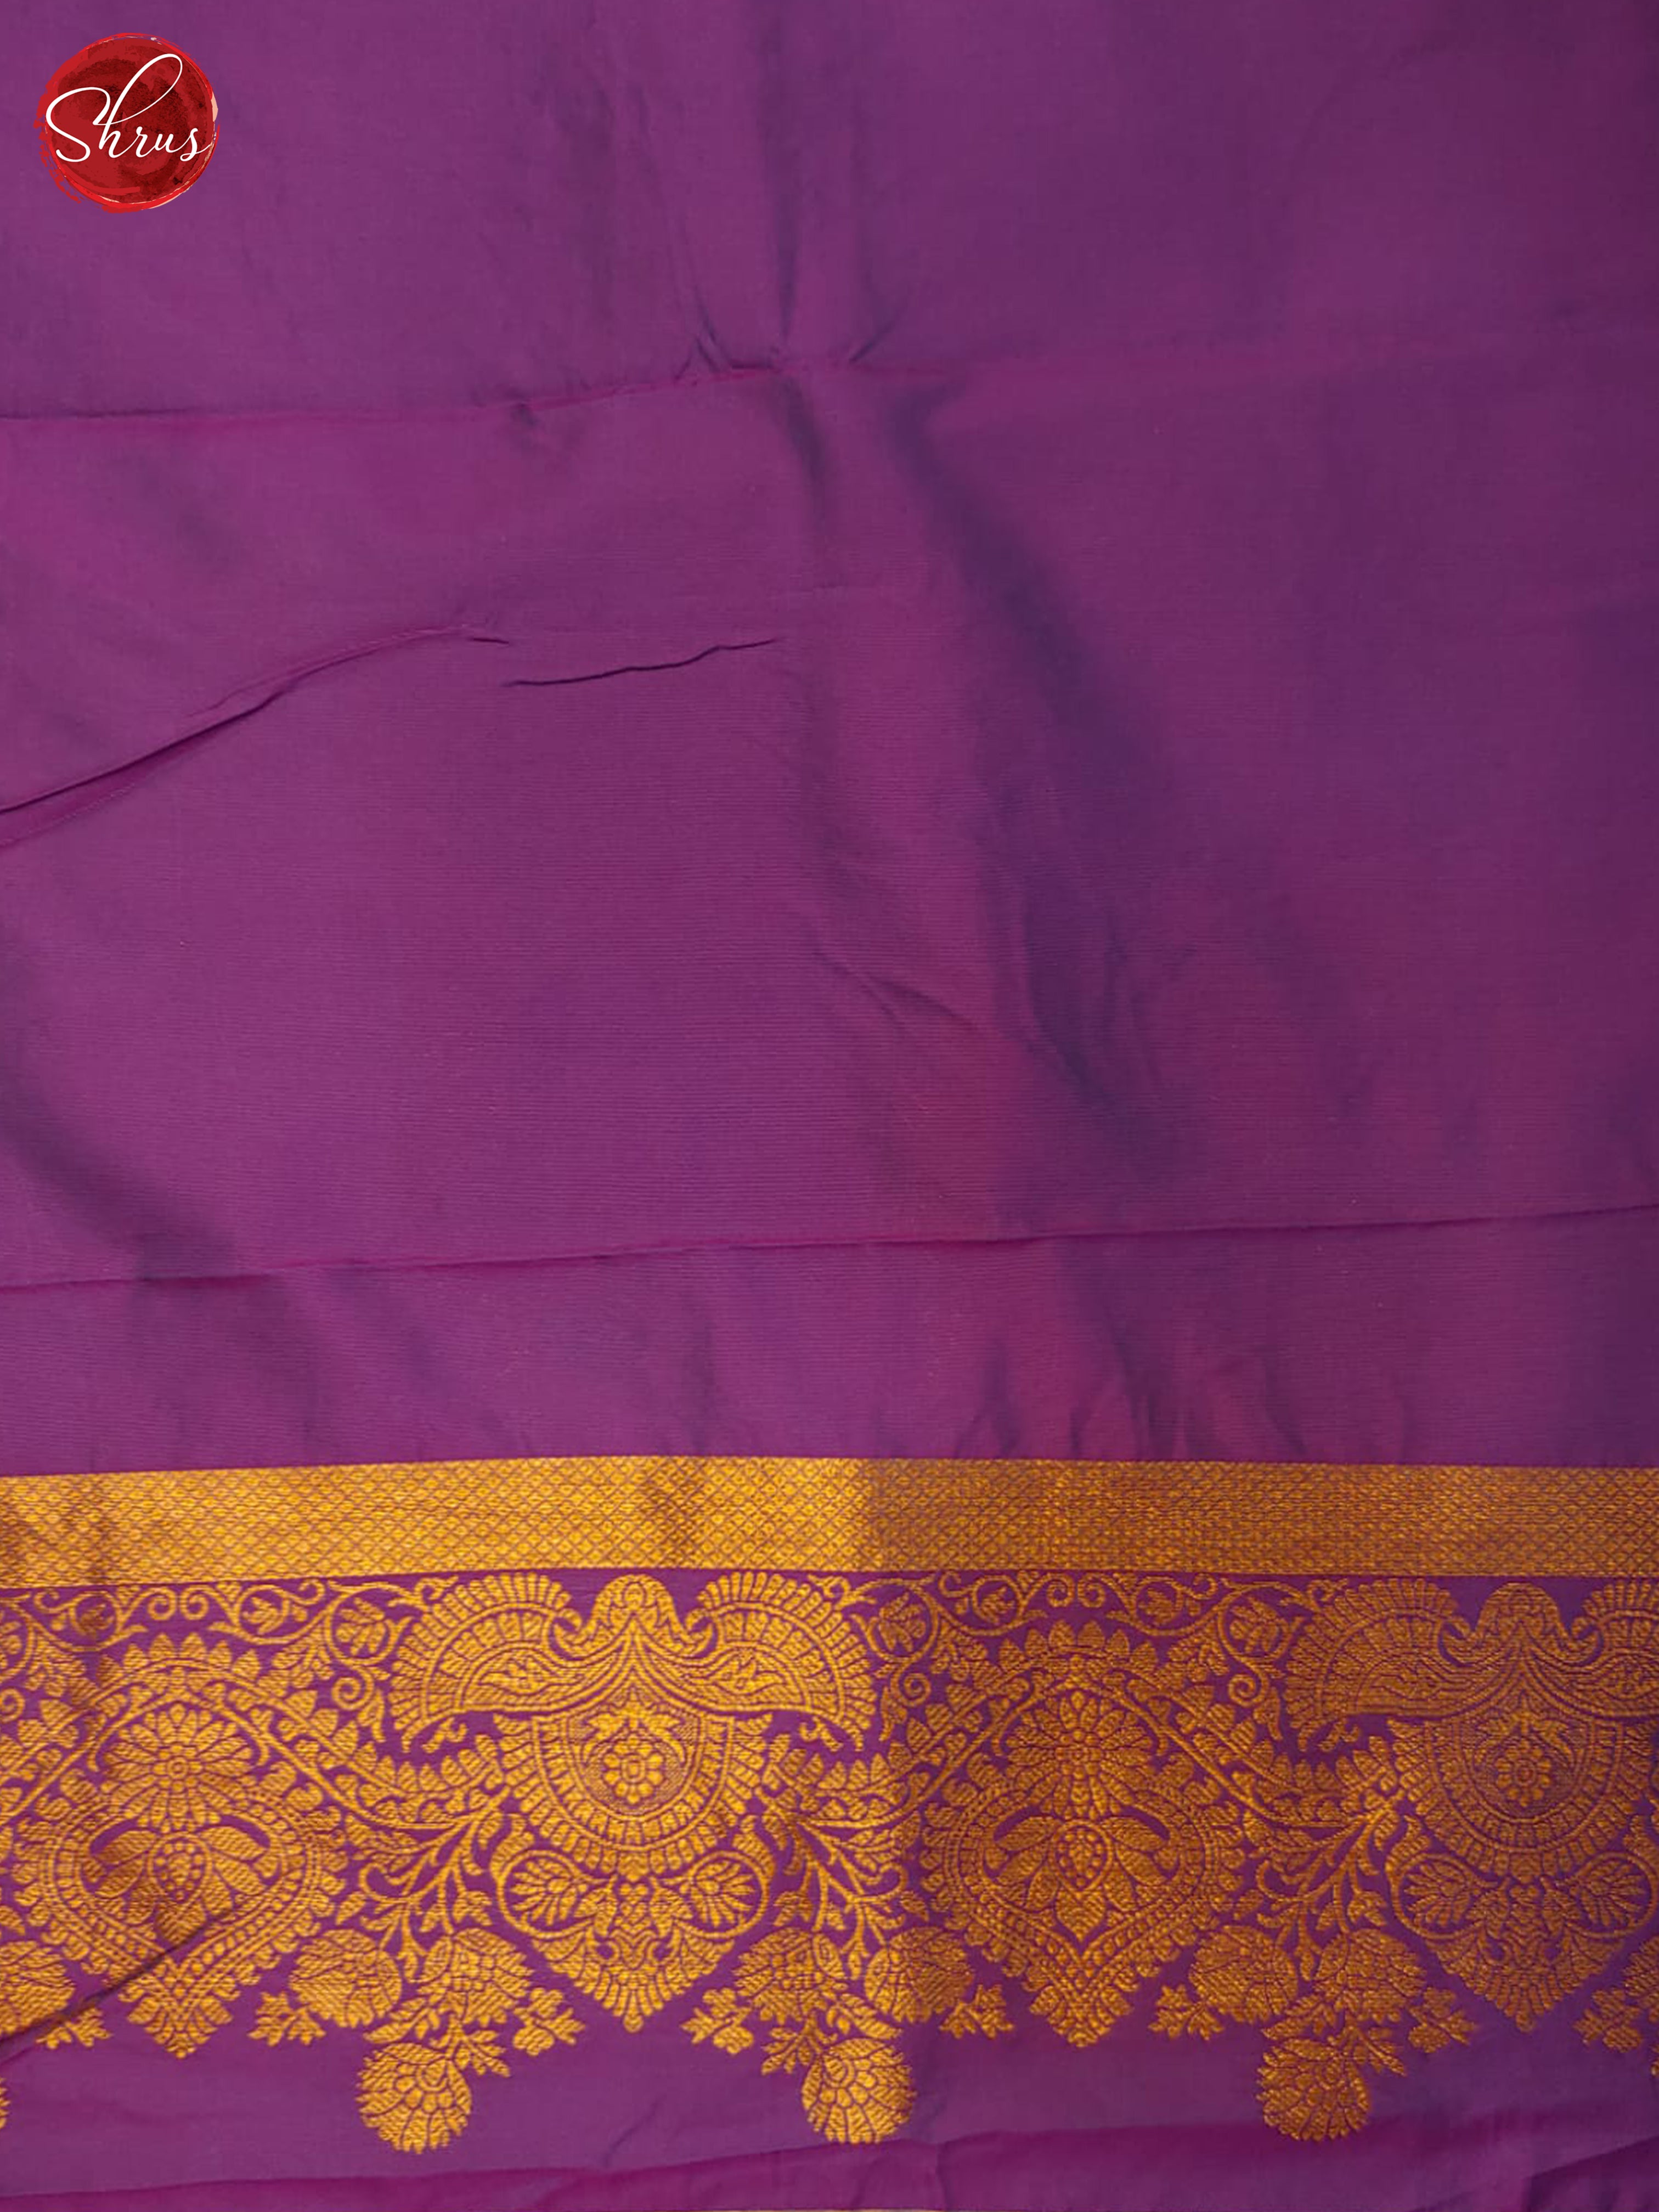 Blue & Purple - Semi kanchipuram saree - Shop on ShrusEternity.com